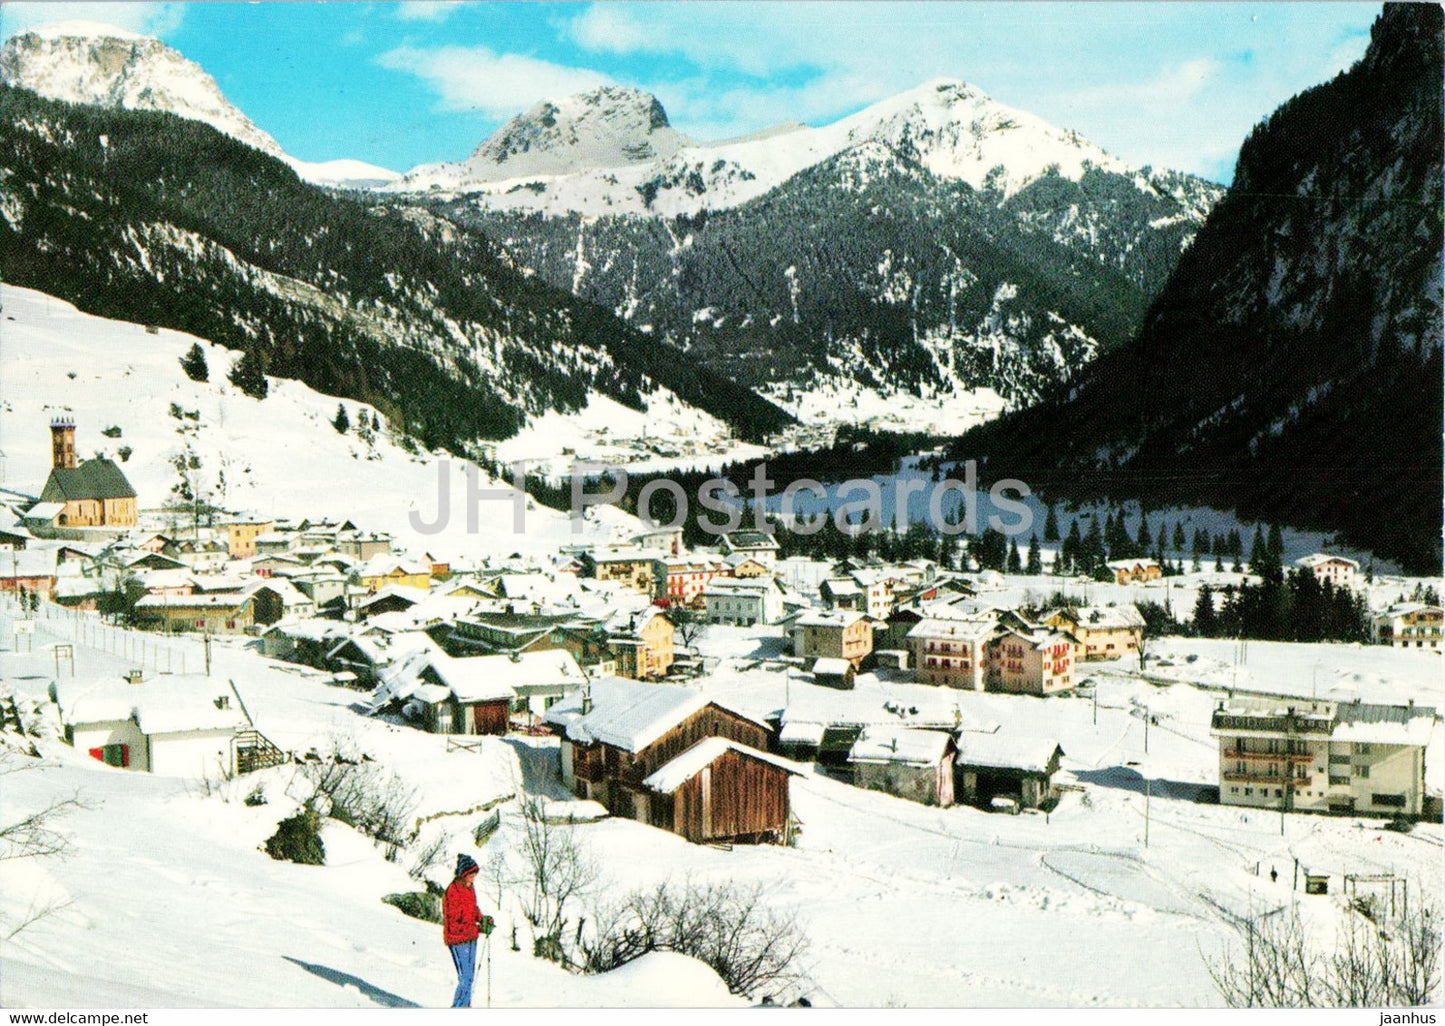 Campitello - Dolomiti di Fassa - verso Passo Pordoi - 1973 - Italy - used - JH Postcards